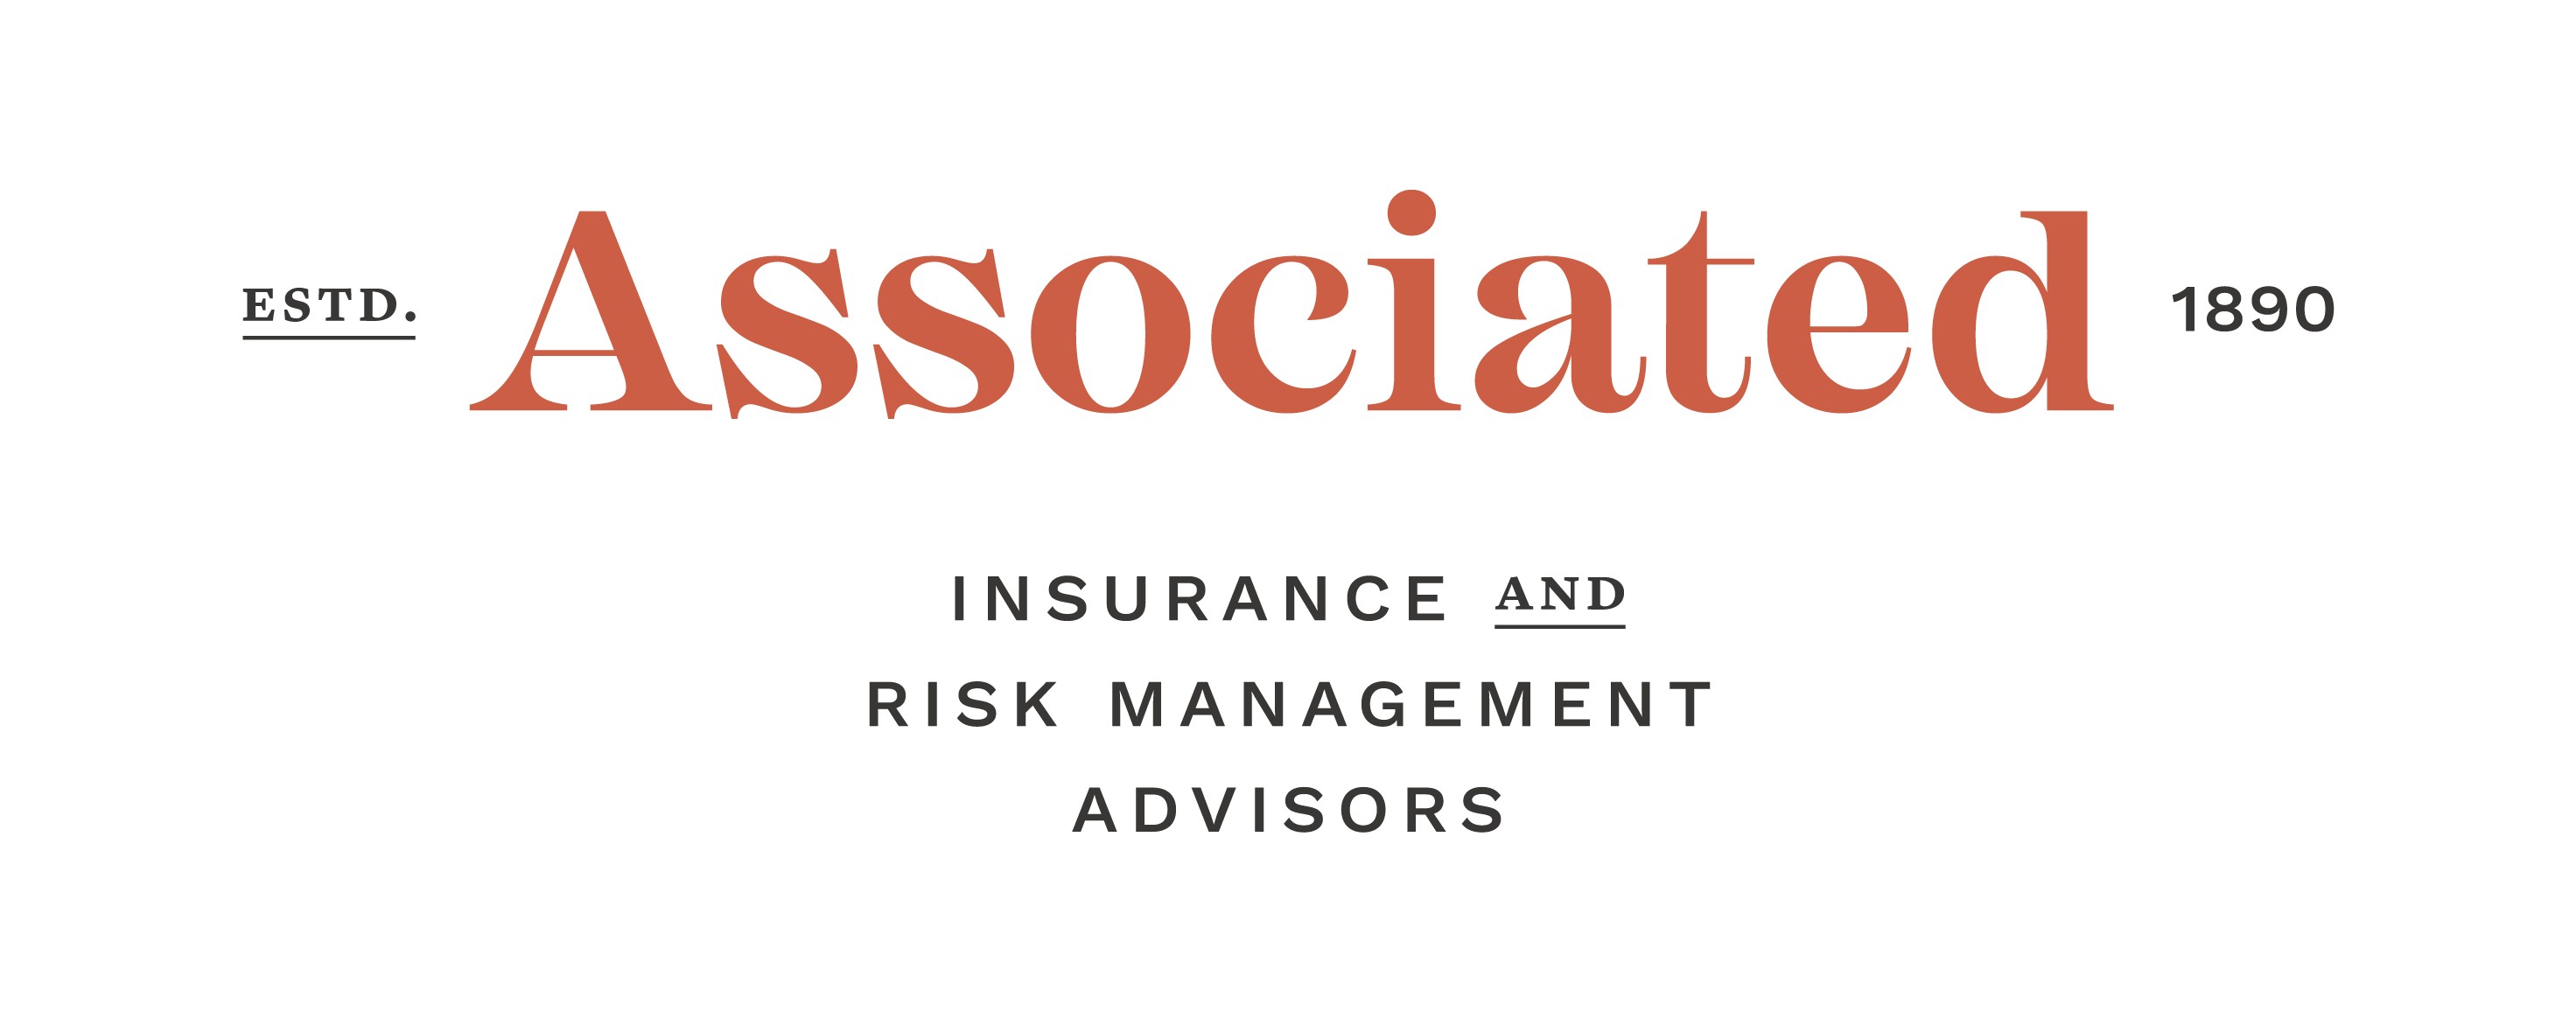 Associated Insurance And Risk Management Advisors Linkedin